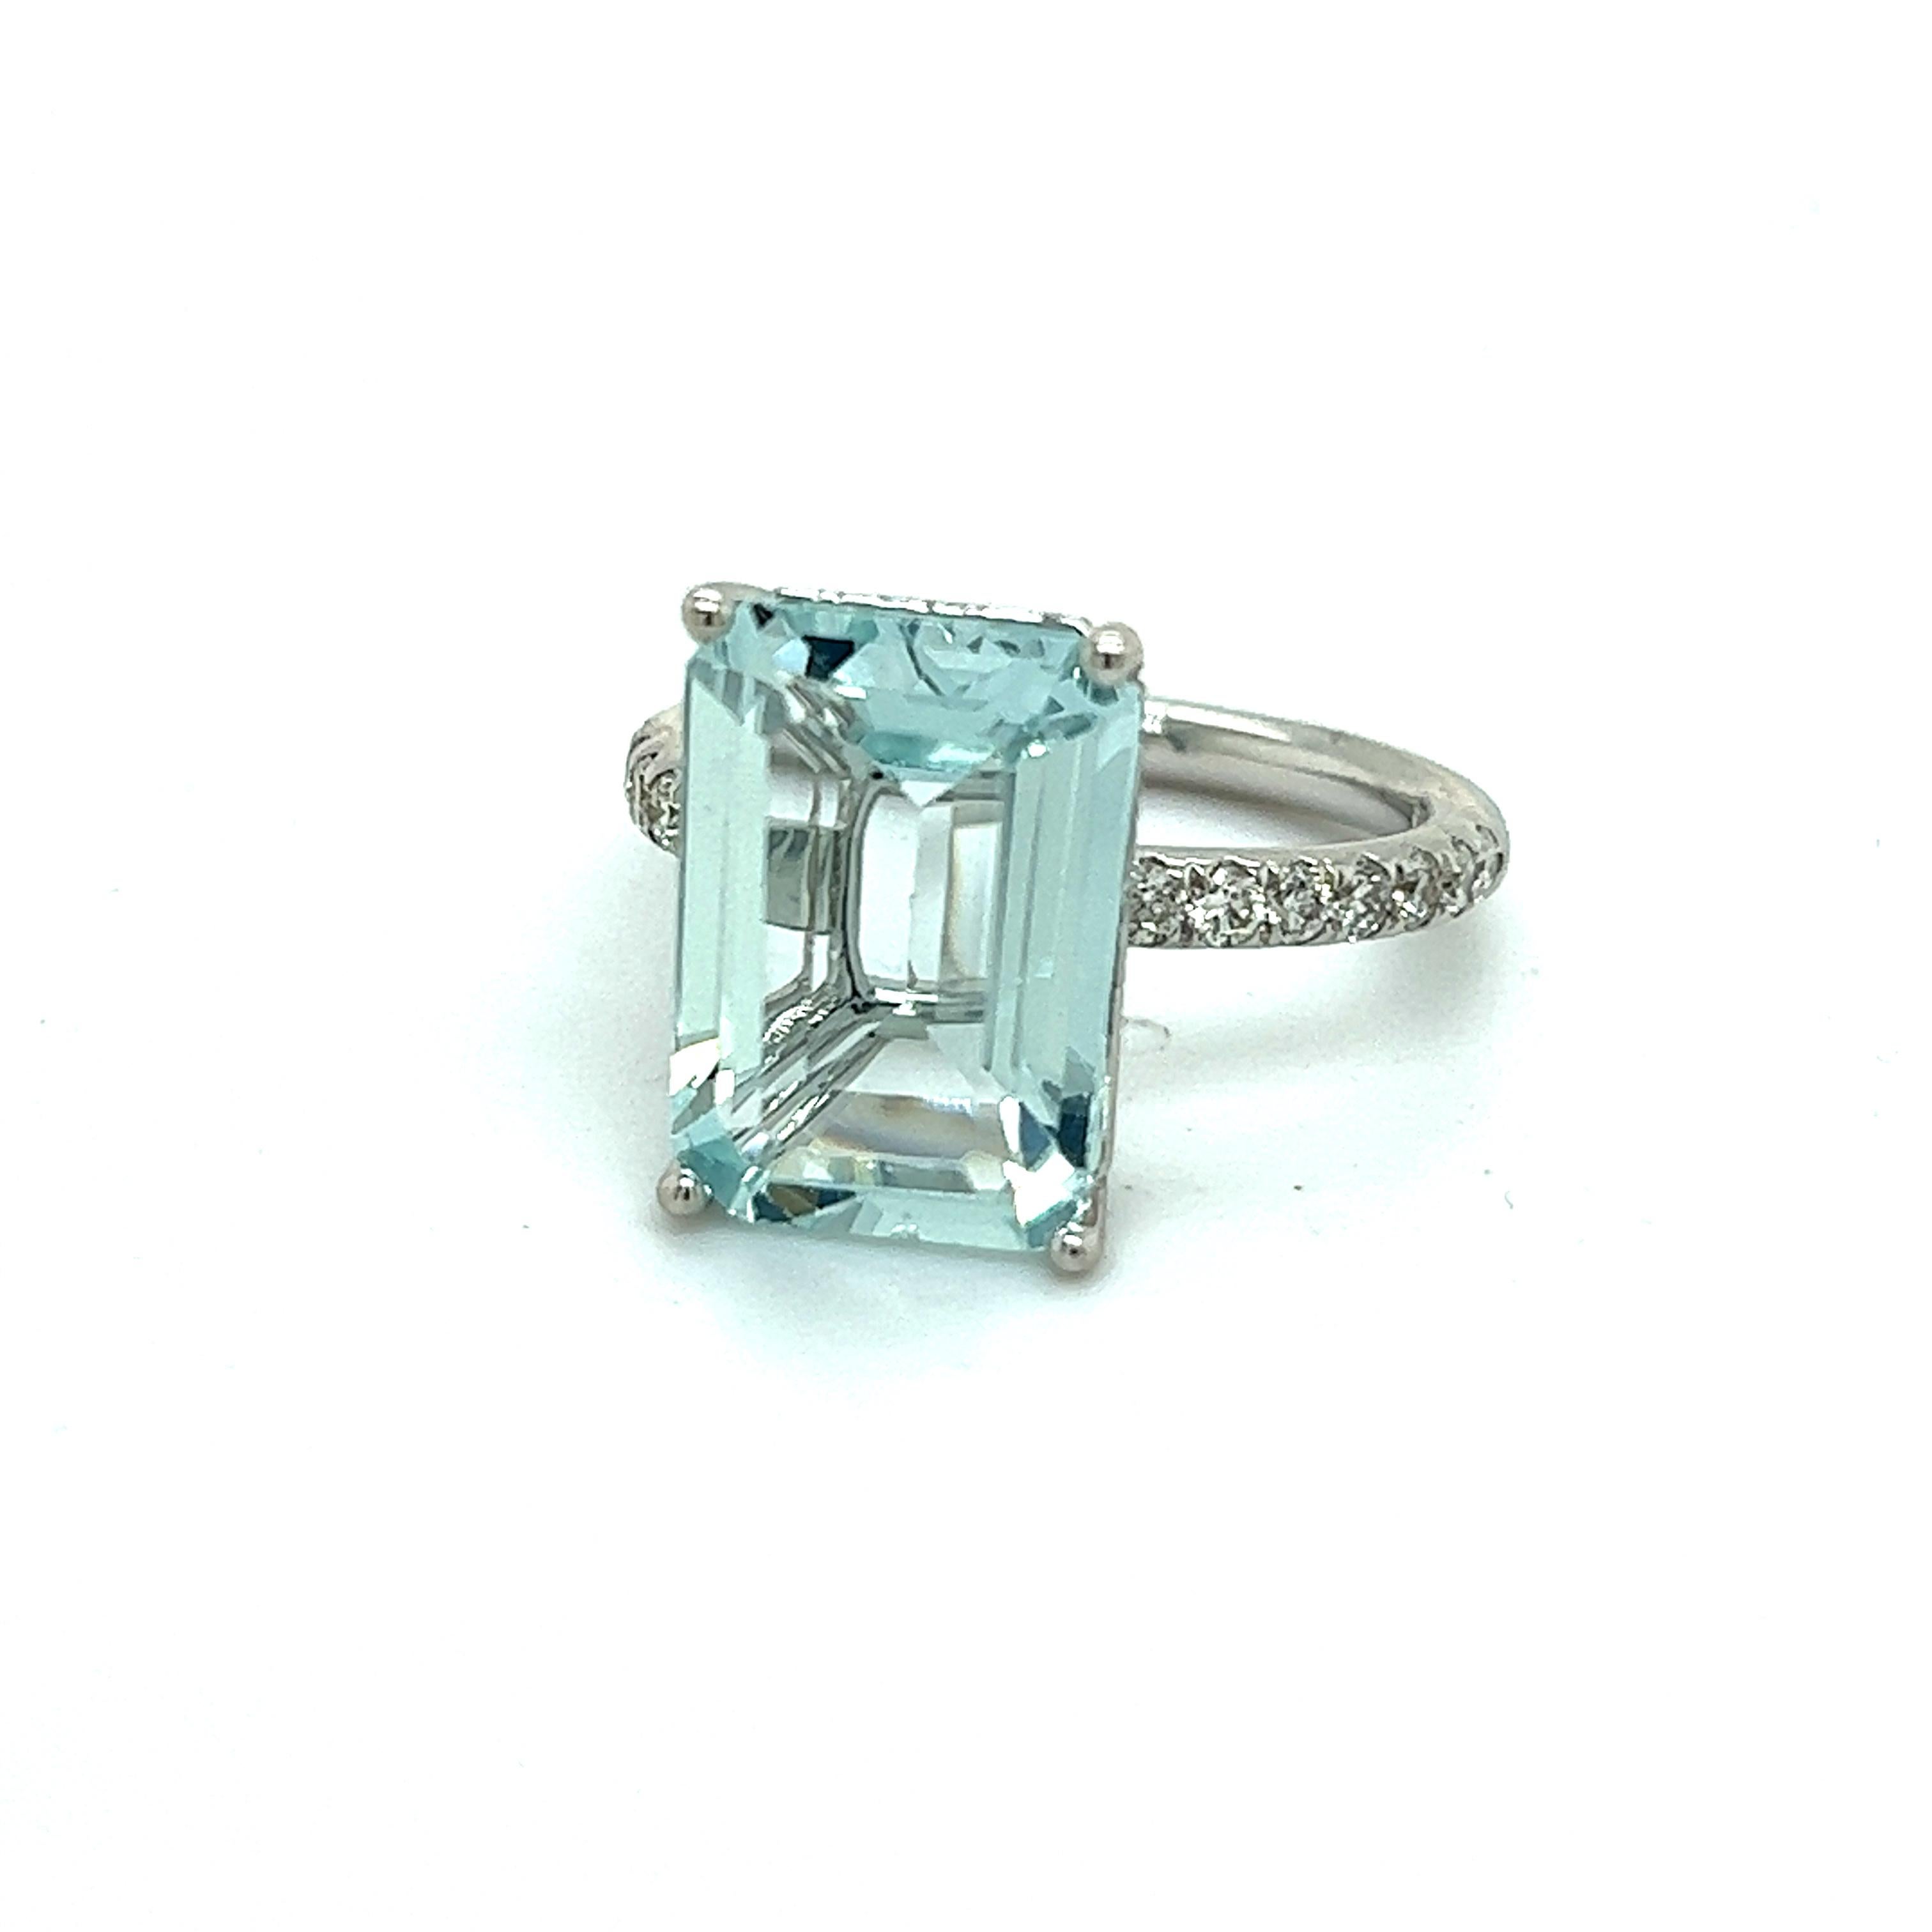 Natürlicher Aquamarin Diamant Ring Größe 6,5 14k W Gold 5,78 TCW zertifiziert $4.795 217097

Dies ist ein einzigartiges, maßgeschneidertes, glamouröses Schmuckstück!

Nichts sagt mehr 